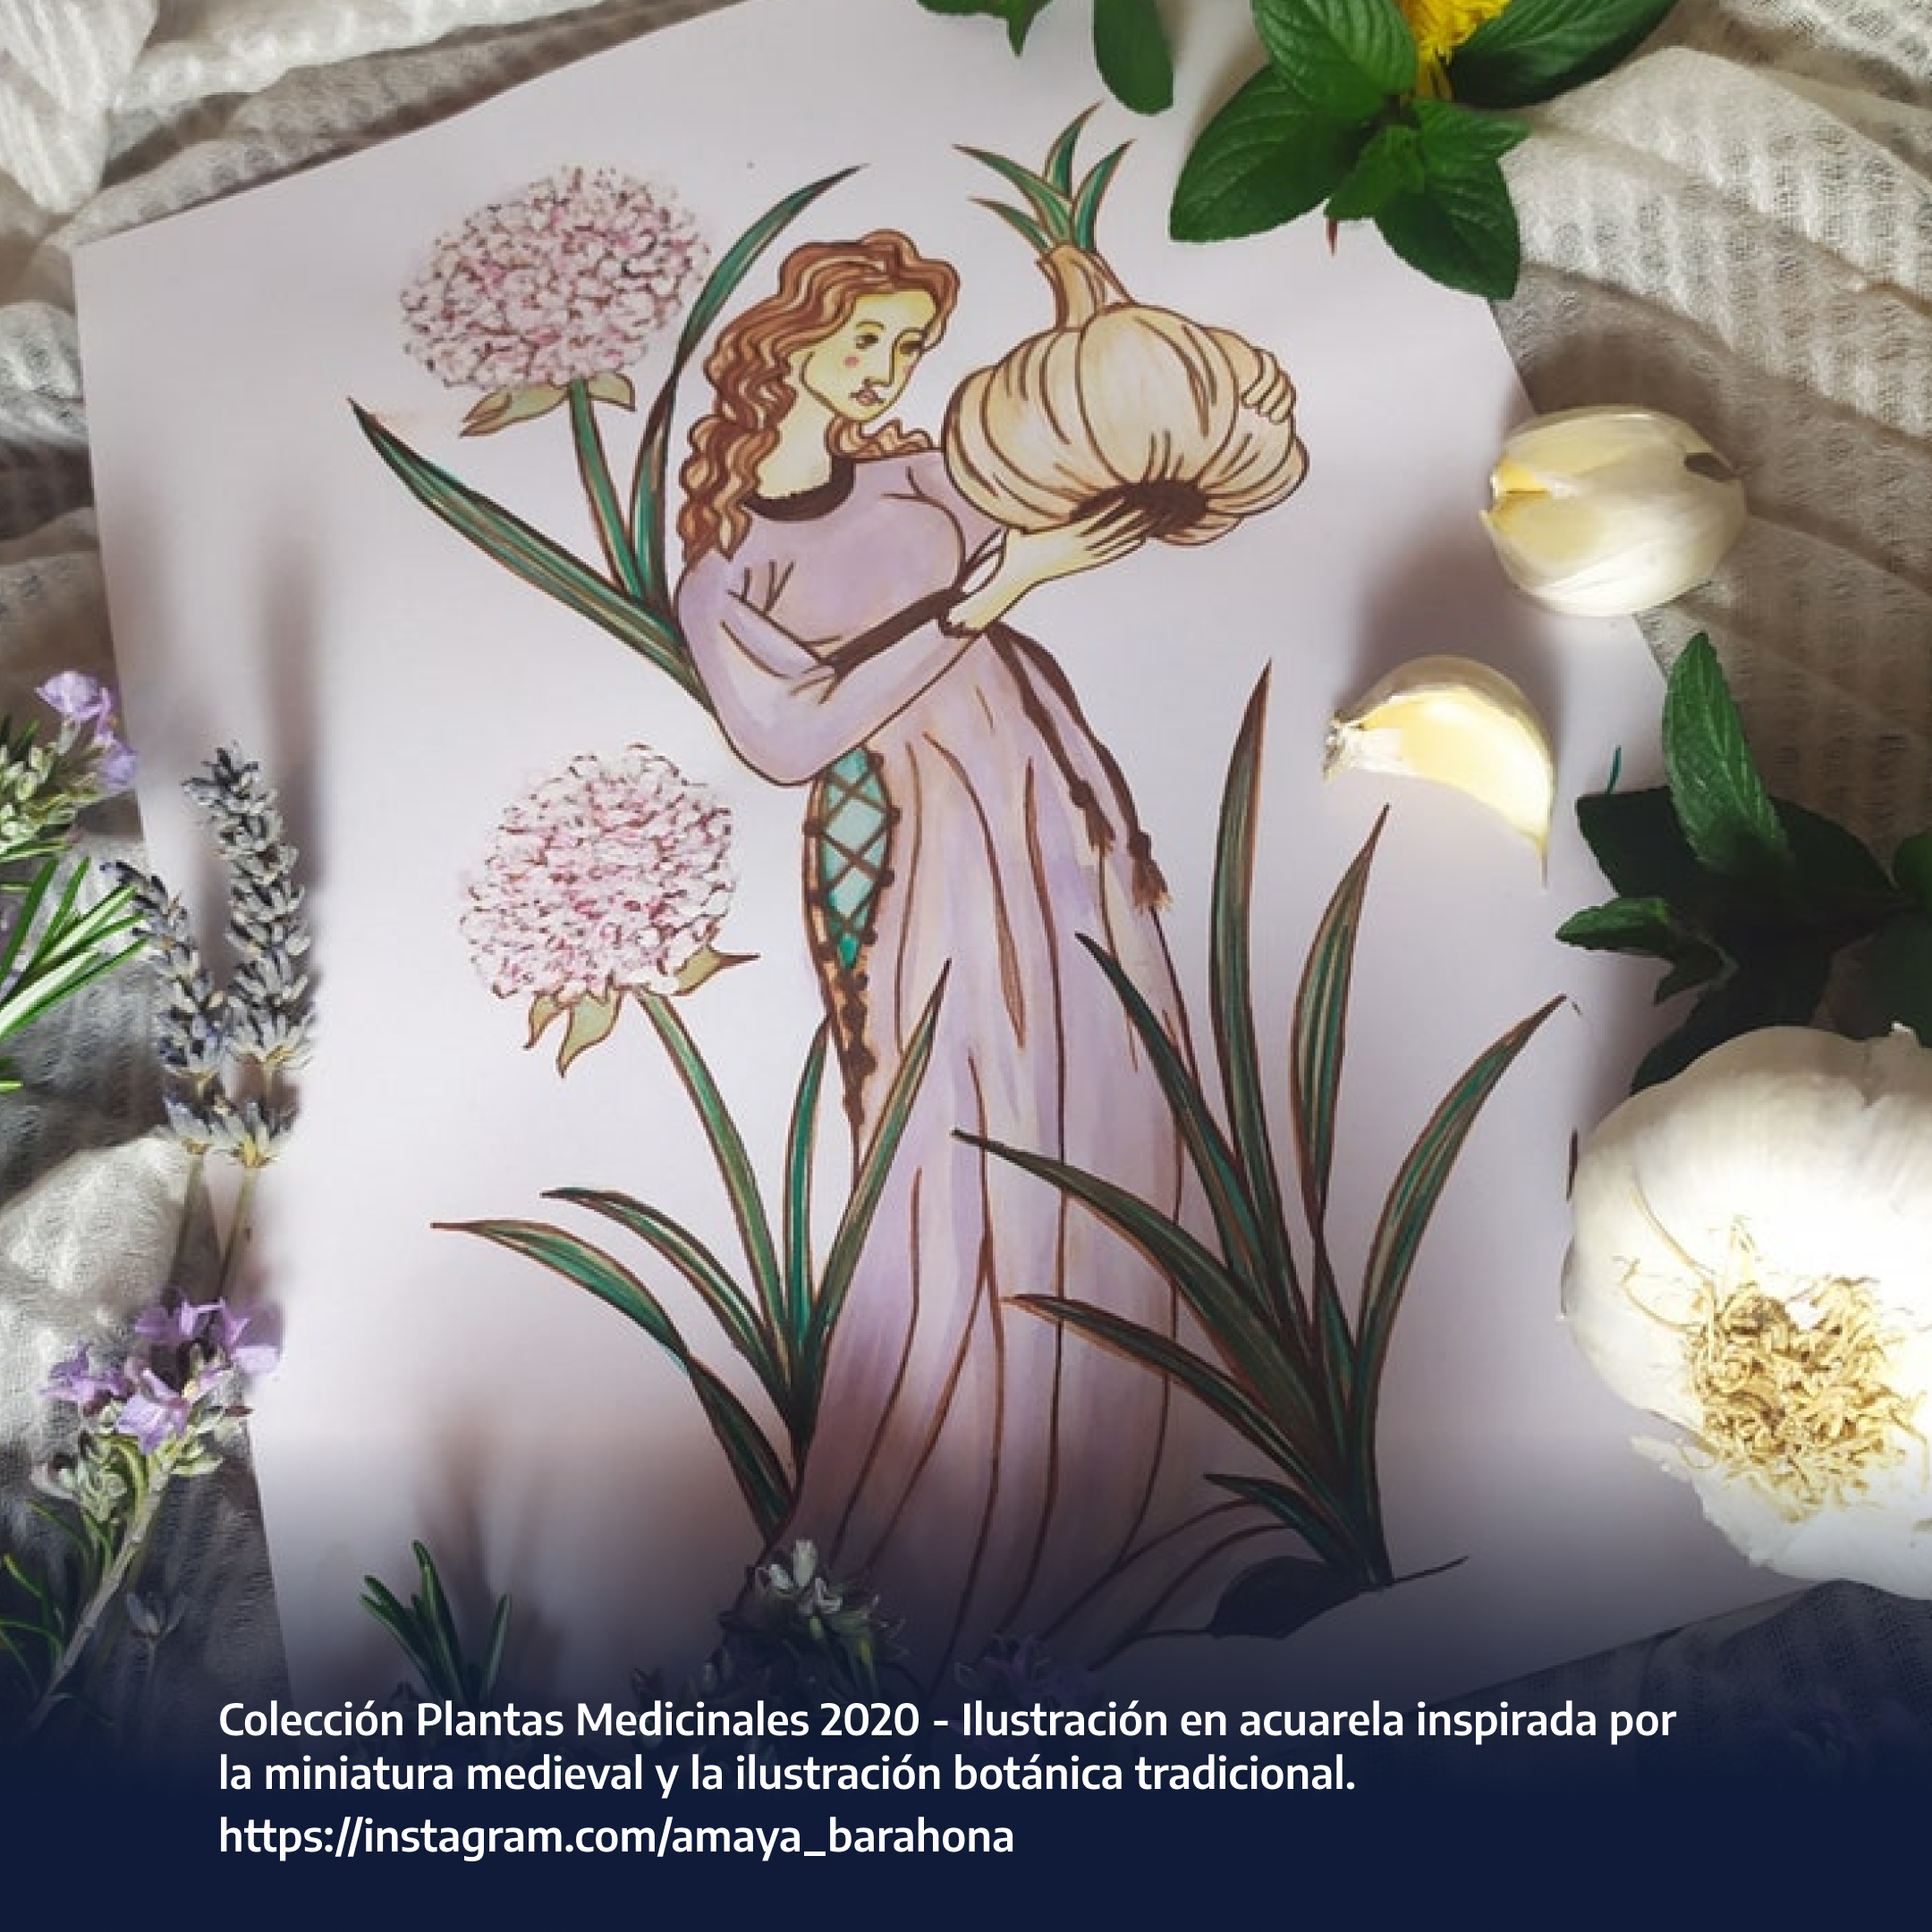 Colección Plantas Medicinales 2020 - Ilustración en acuarela inspirada por la miniatura medieval y la ilustración botánica tradicional. https://instagram.com/amaya_barahona